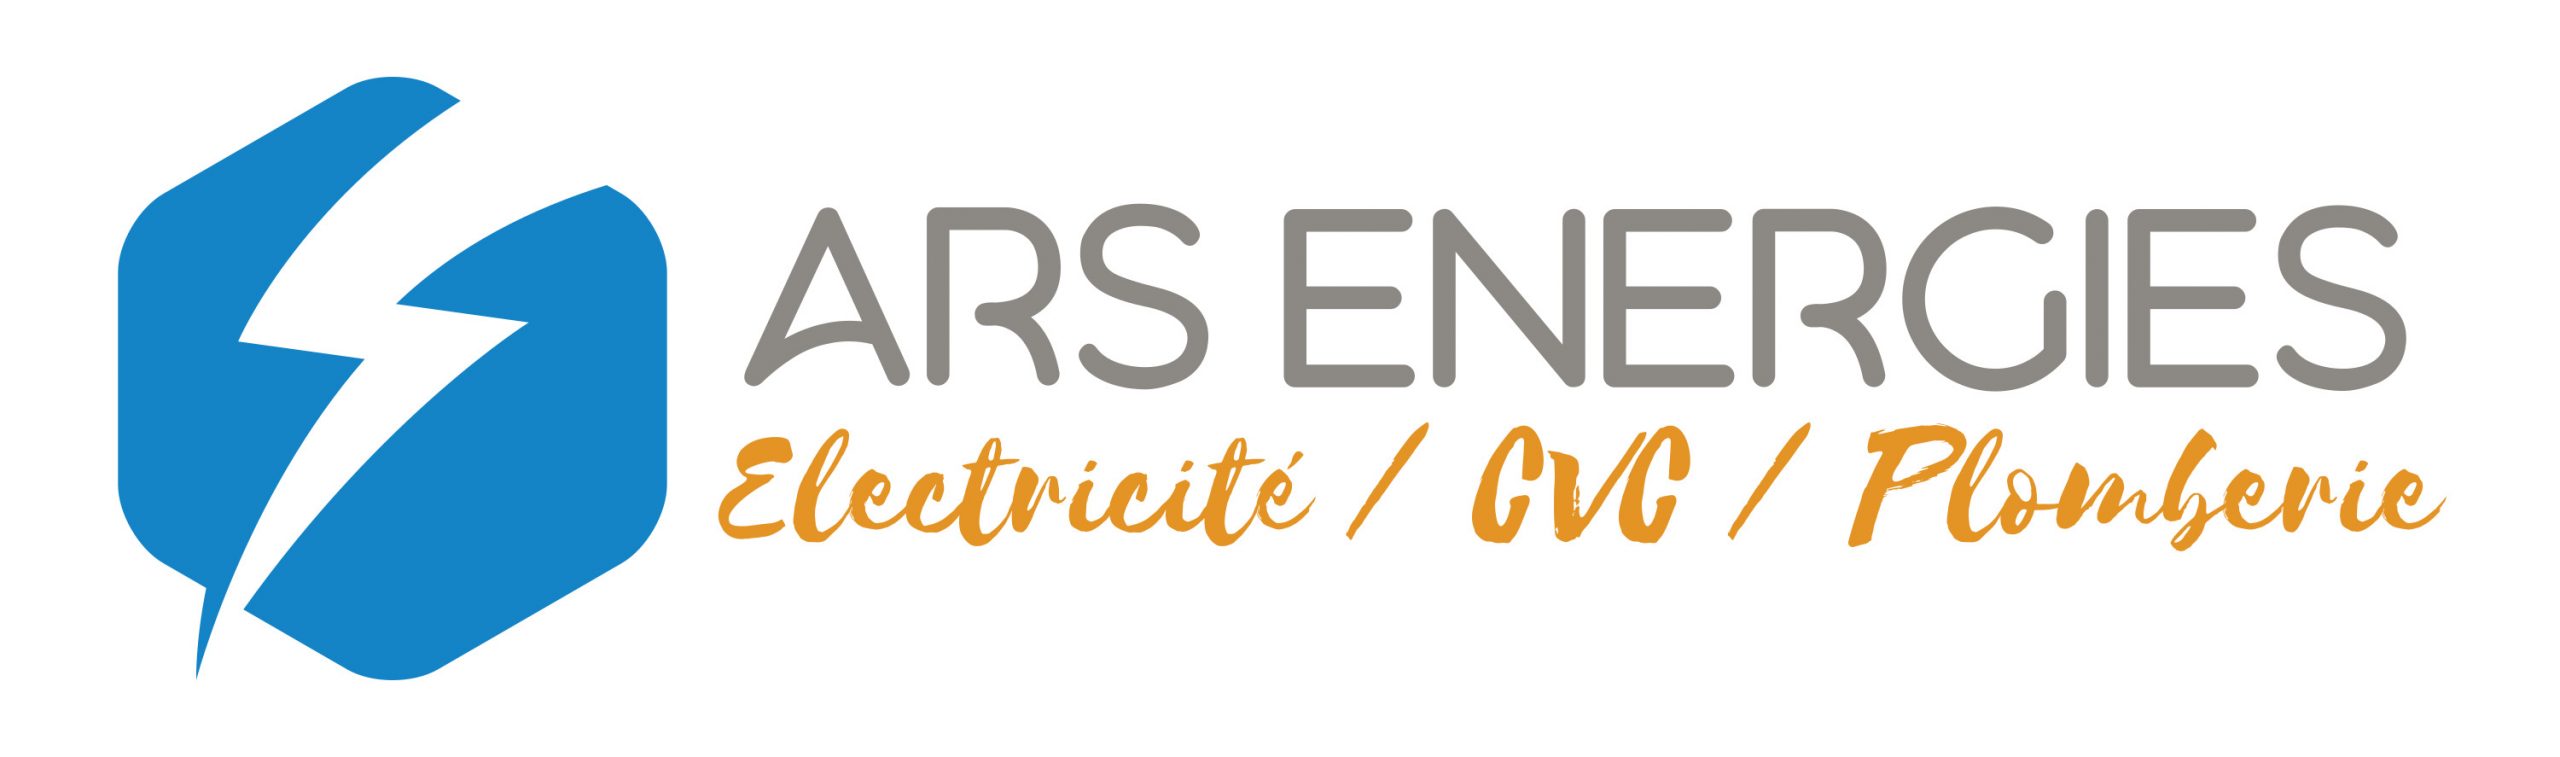 Ars Energies - Expert en travaux électriques, climatisation/chauffage & plomberie